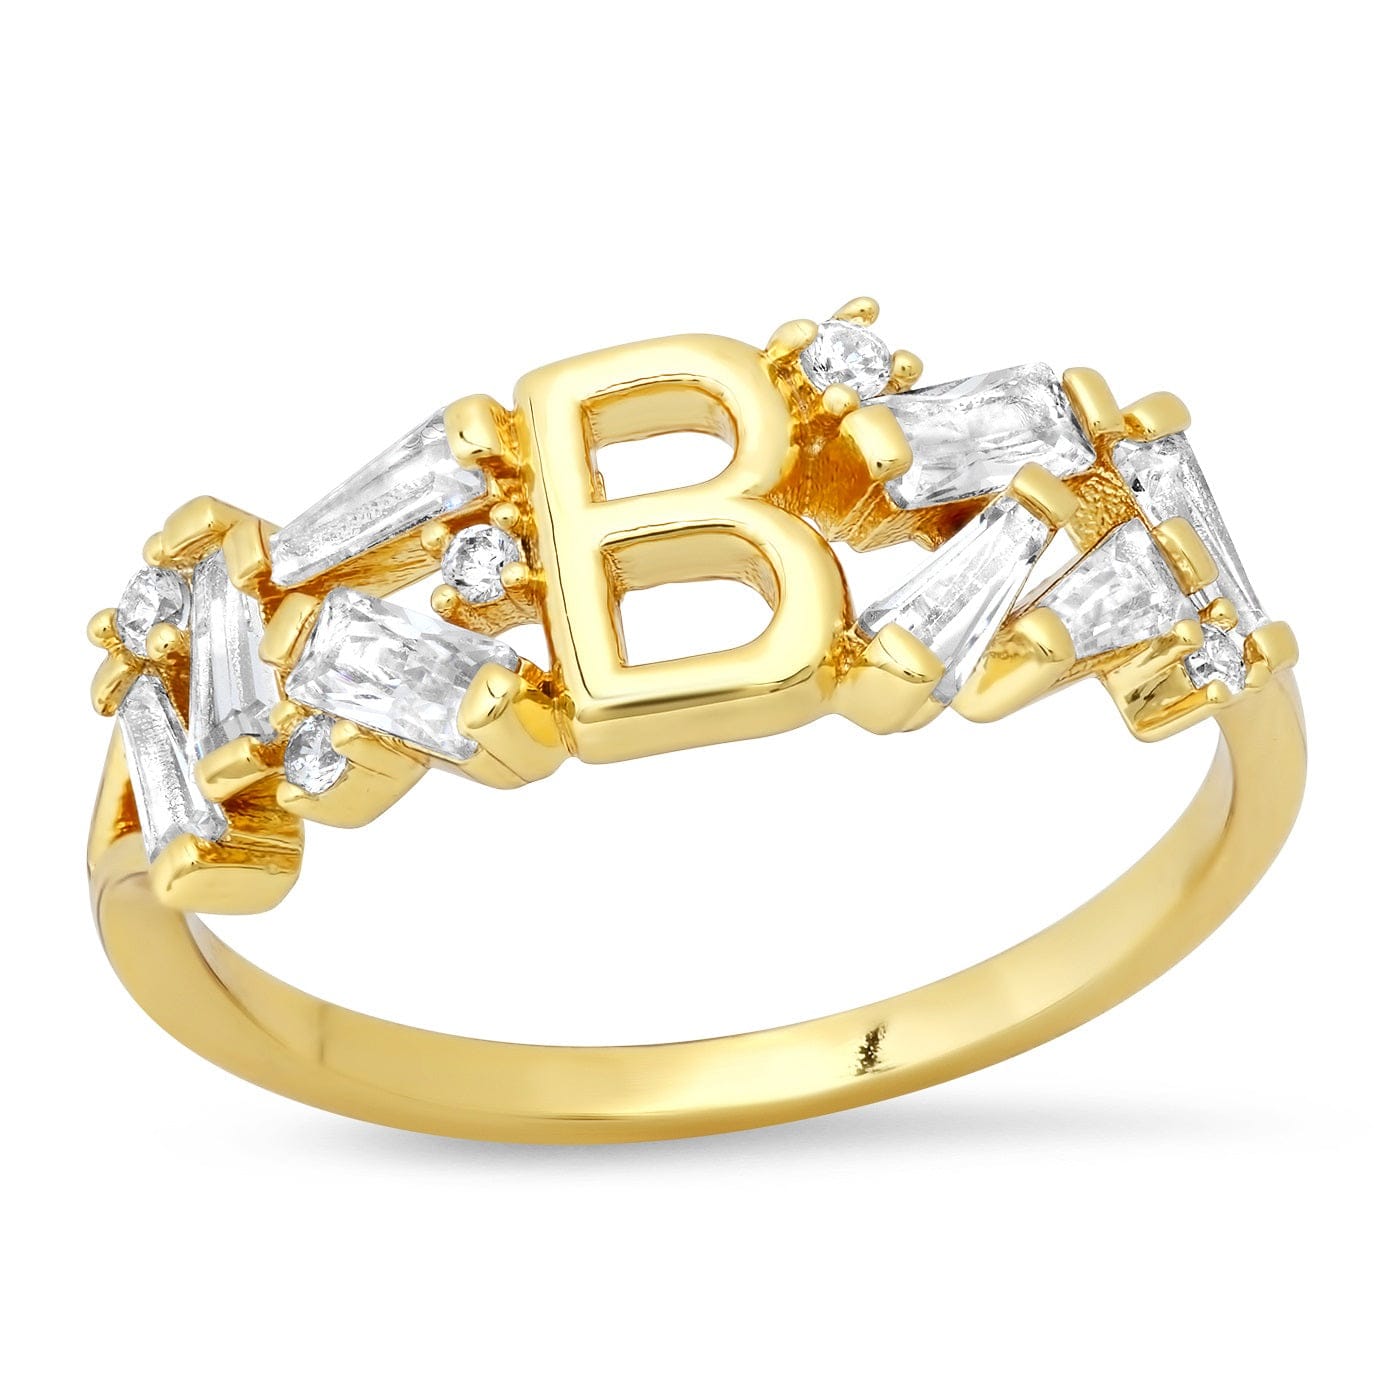 TAI JEWELRY Rings 6 / B Baguette Initial Ring